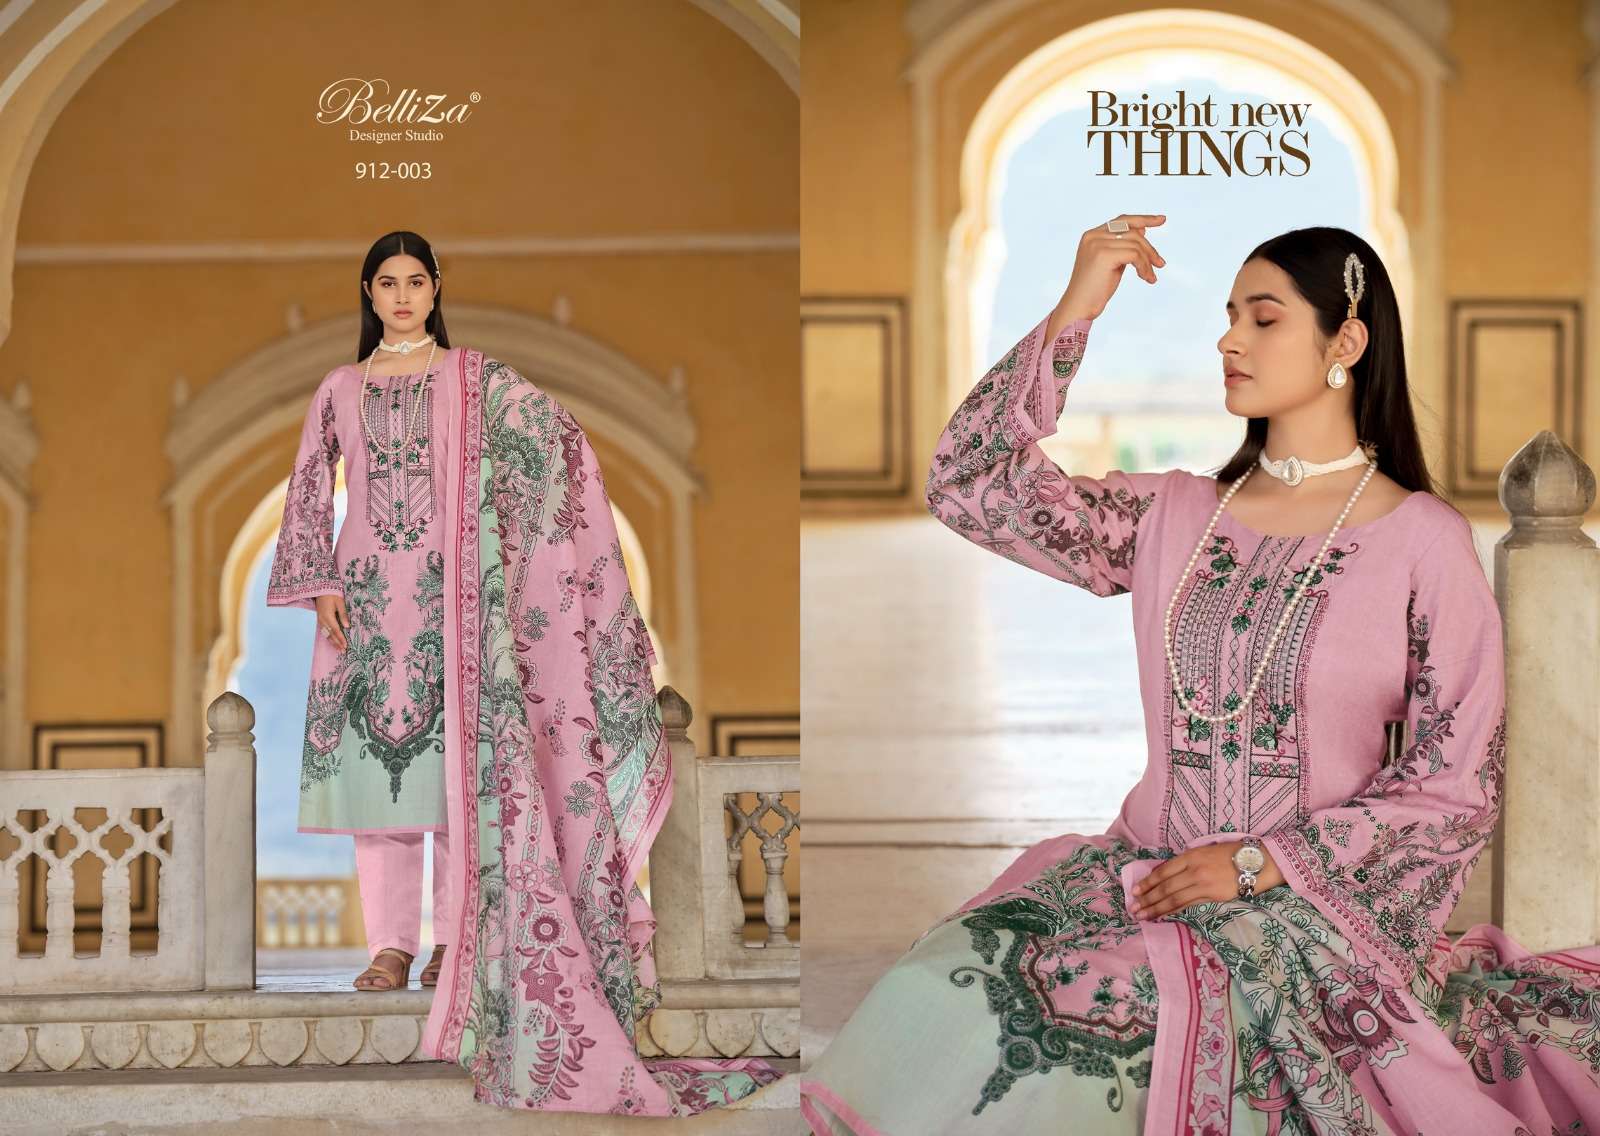 Belliza Naira Vol 49 Cotton Digital Printed Dress Material Wholesale catalog